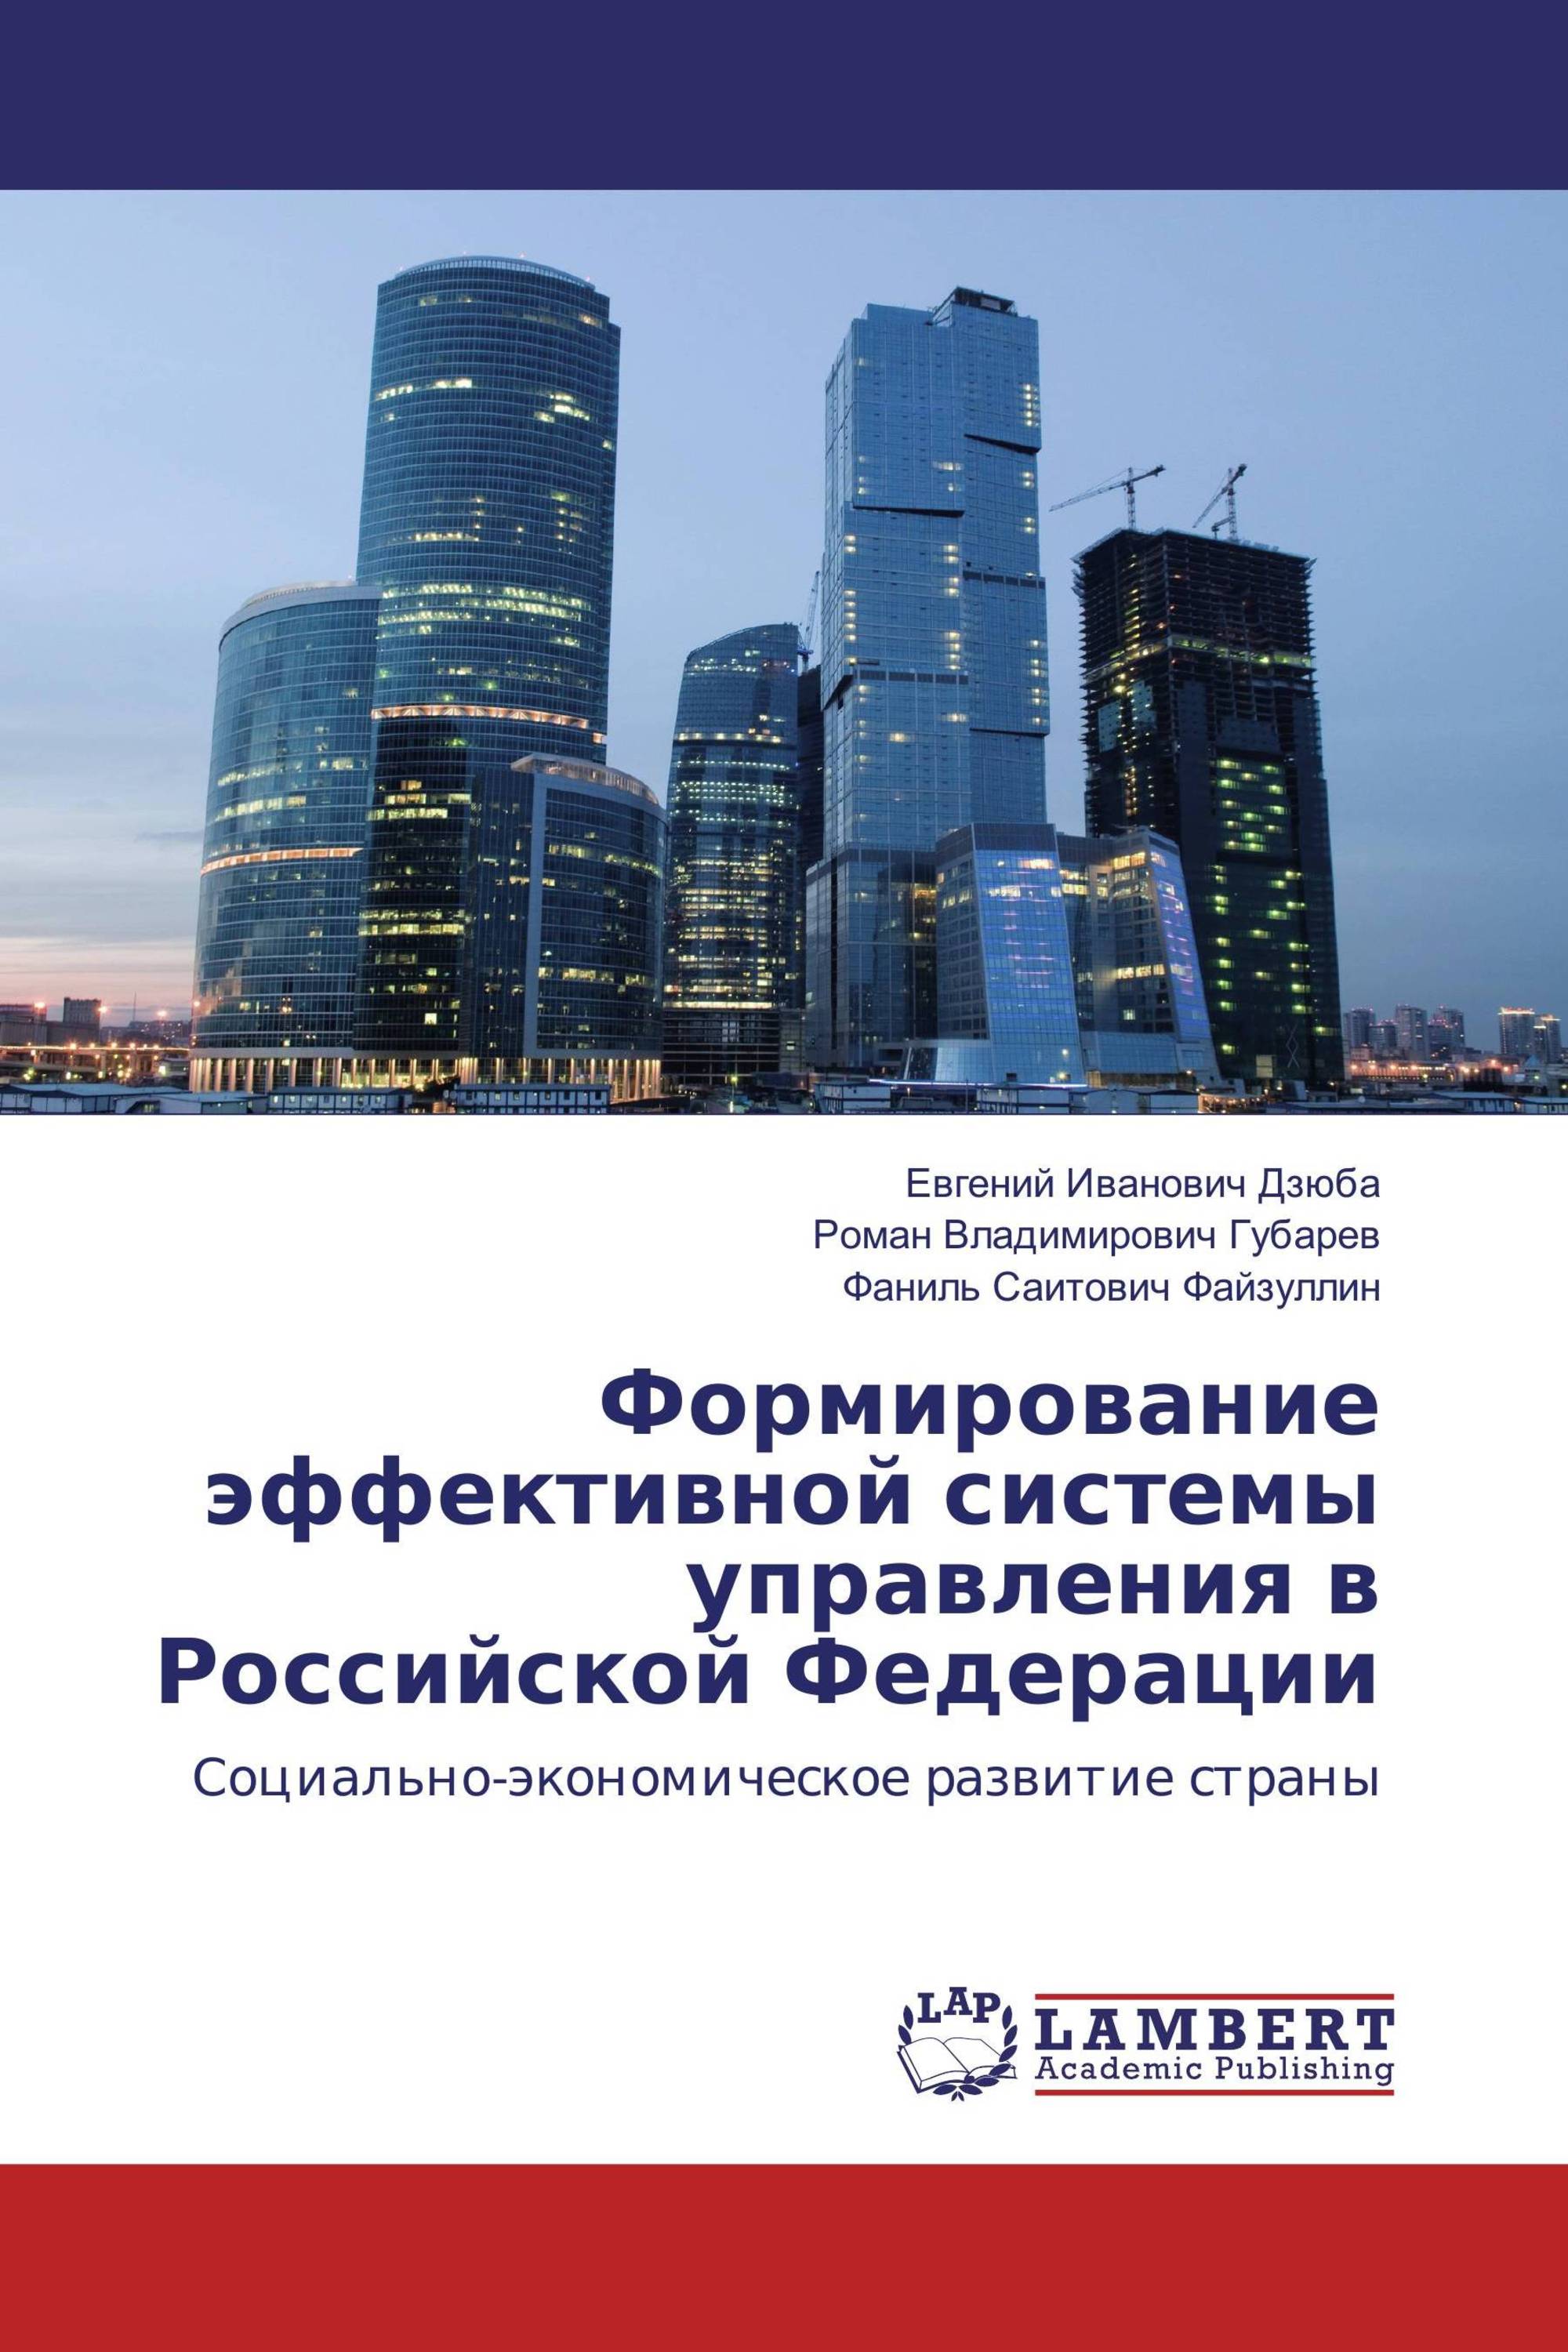 Формирование эффективной системы управления в Российской Федерации